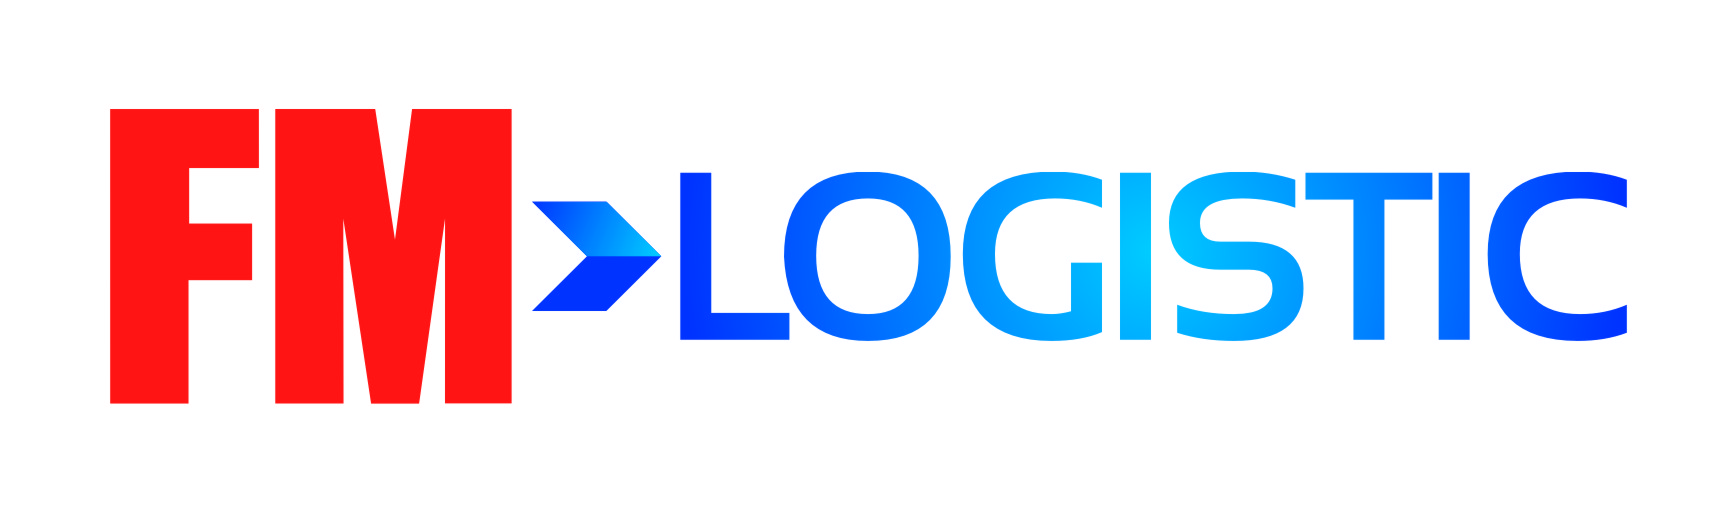 Logo FM Logistic